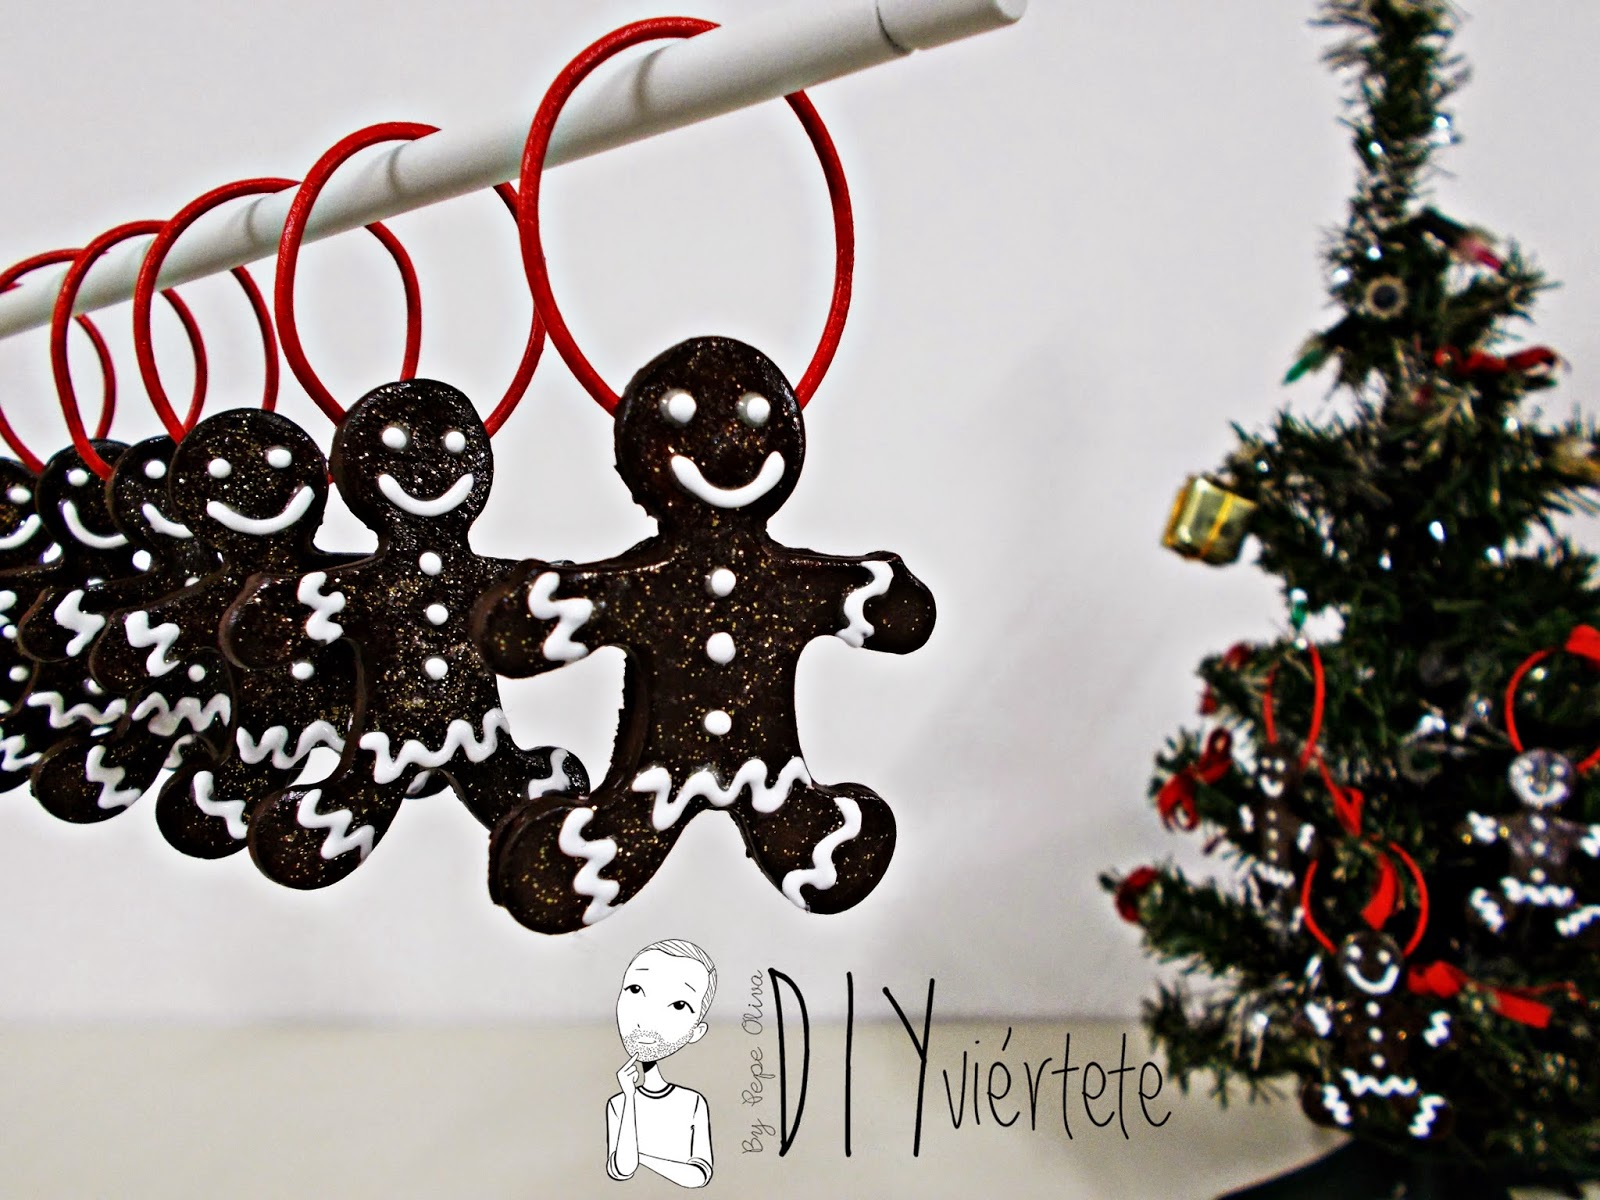 DIY-adorno navideño-ideas decoración-pasta de modelar-porcelana fria-fimo-arcilla polimérica-galleta-muñeco jengibre-Navidad- (1)